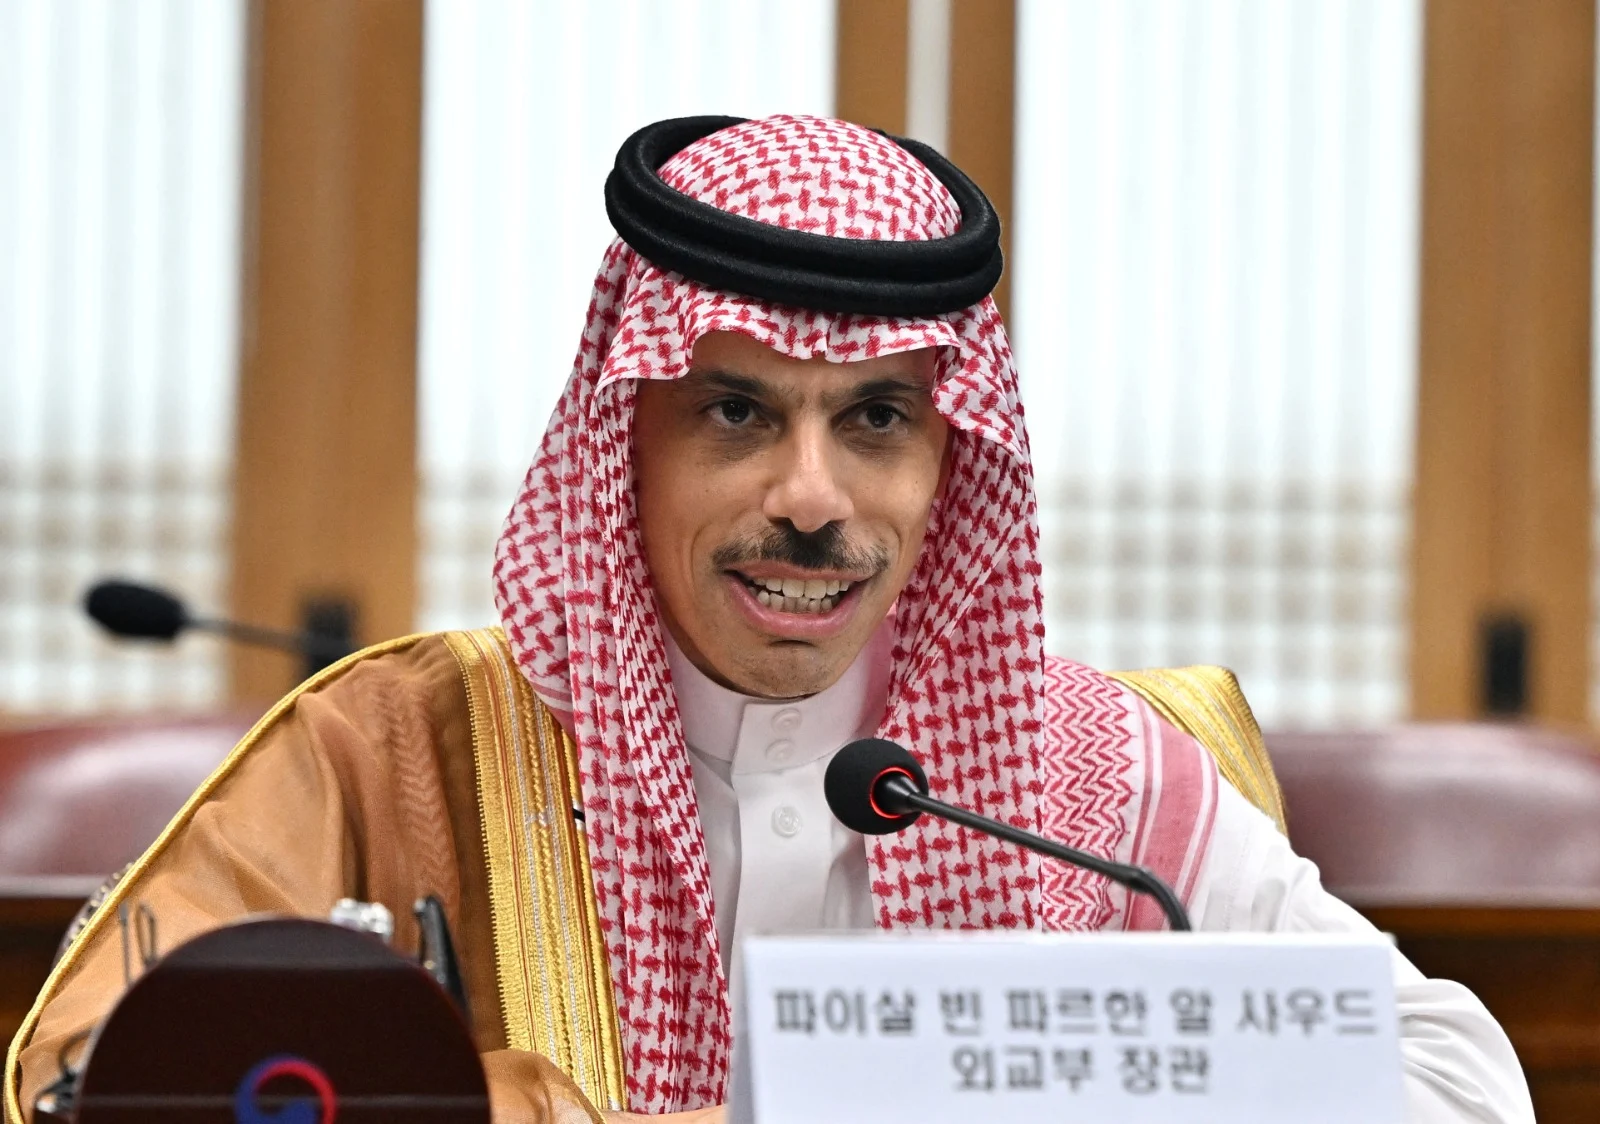 שר החוץ הסעודי פייצל בן פרחאן